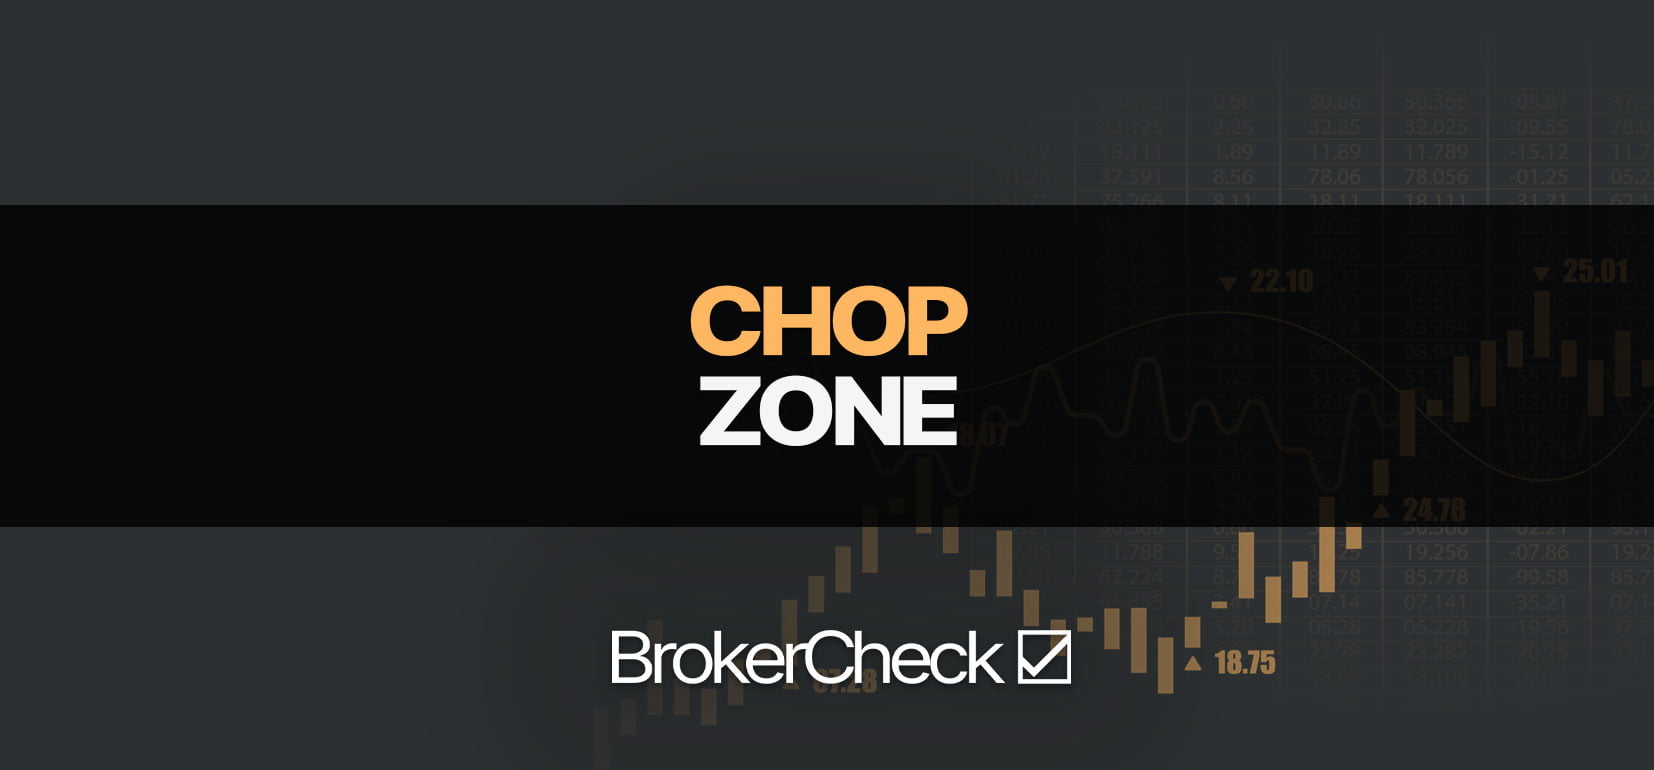 Πώς να χρησιμοποιήσετε την ένδειξη Chop Zone με επιτυχία